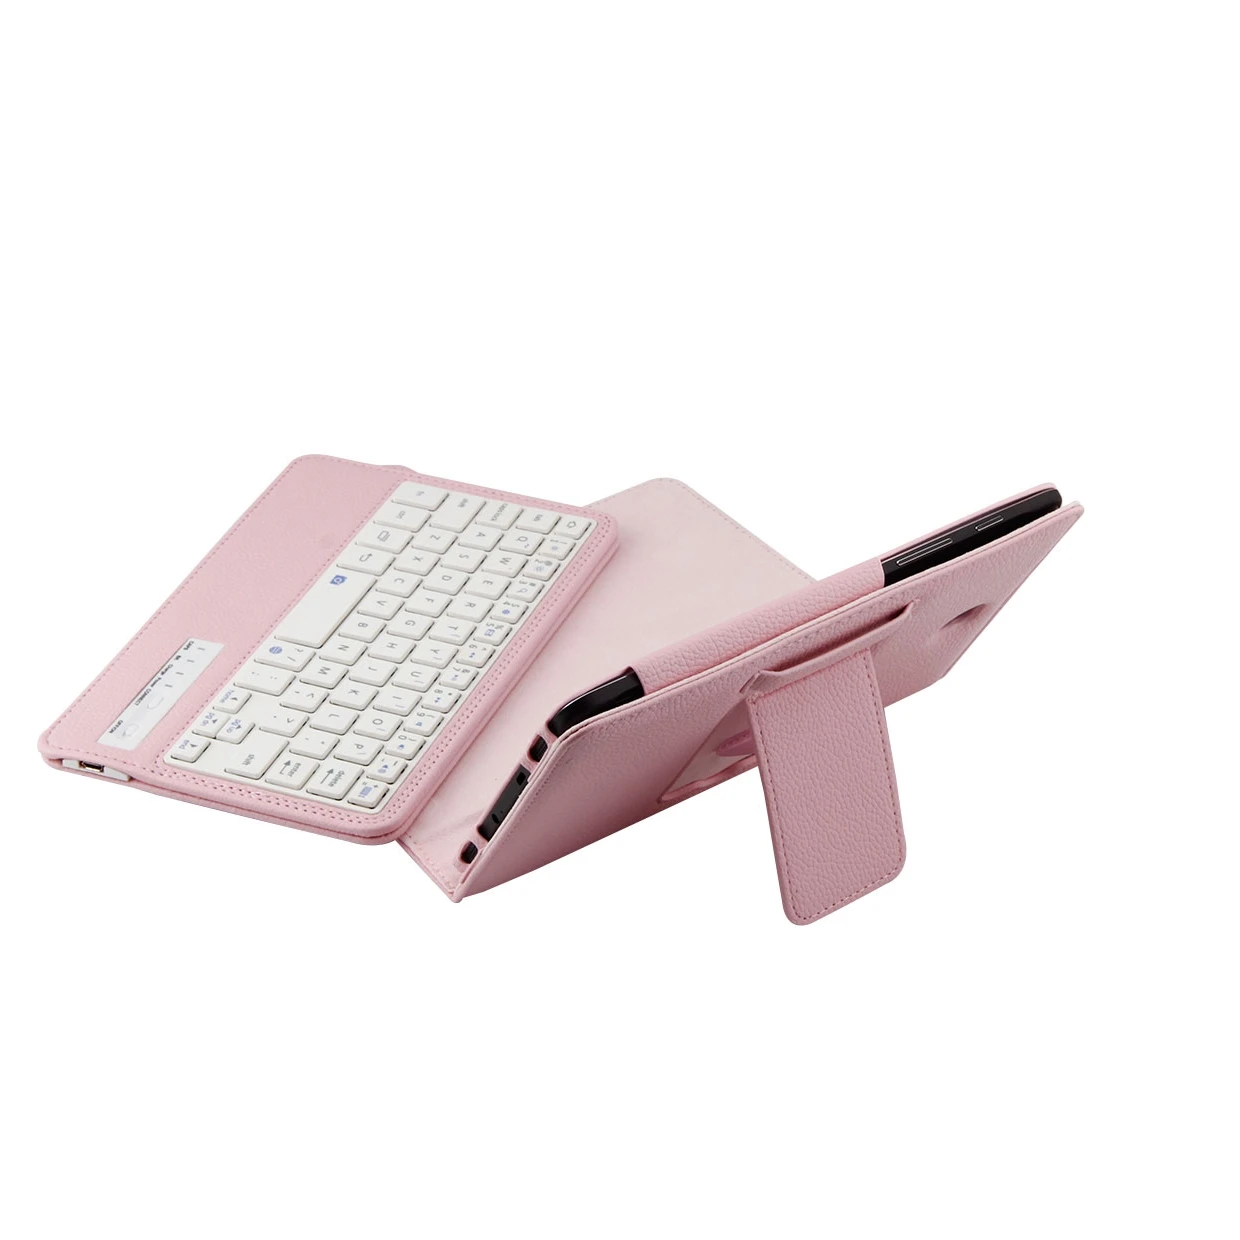 Клавиатура для samsung Galaxy Tab S2 8,0, беспроводной Bluetooth чехол-клавиатура для Galaxy Tab S2 8 ''T710, планшет, откидной кожаный чехол+ ручка